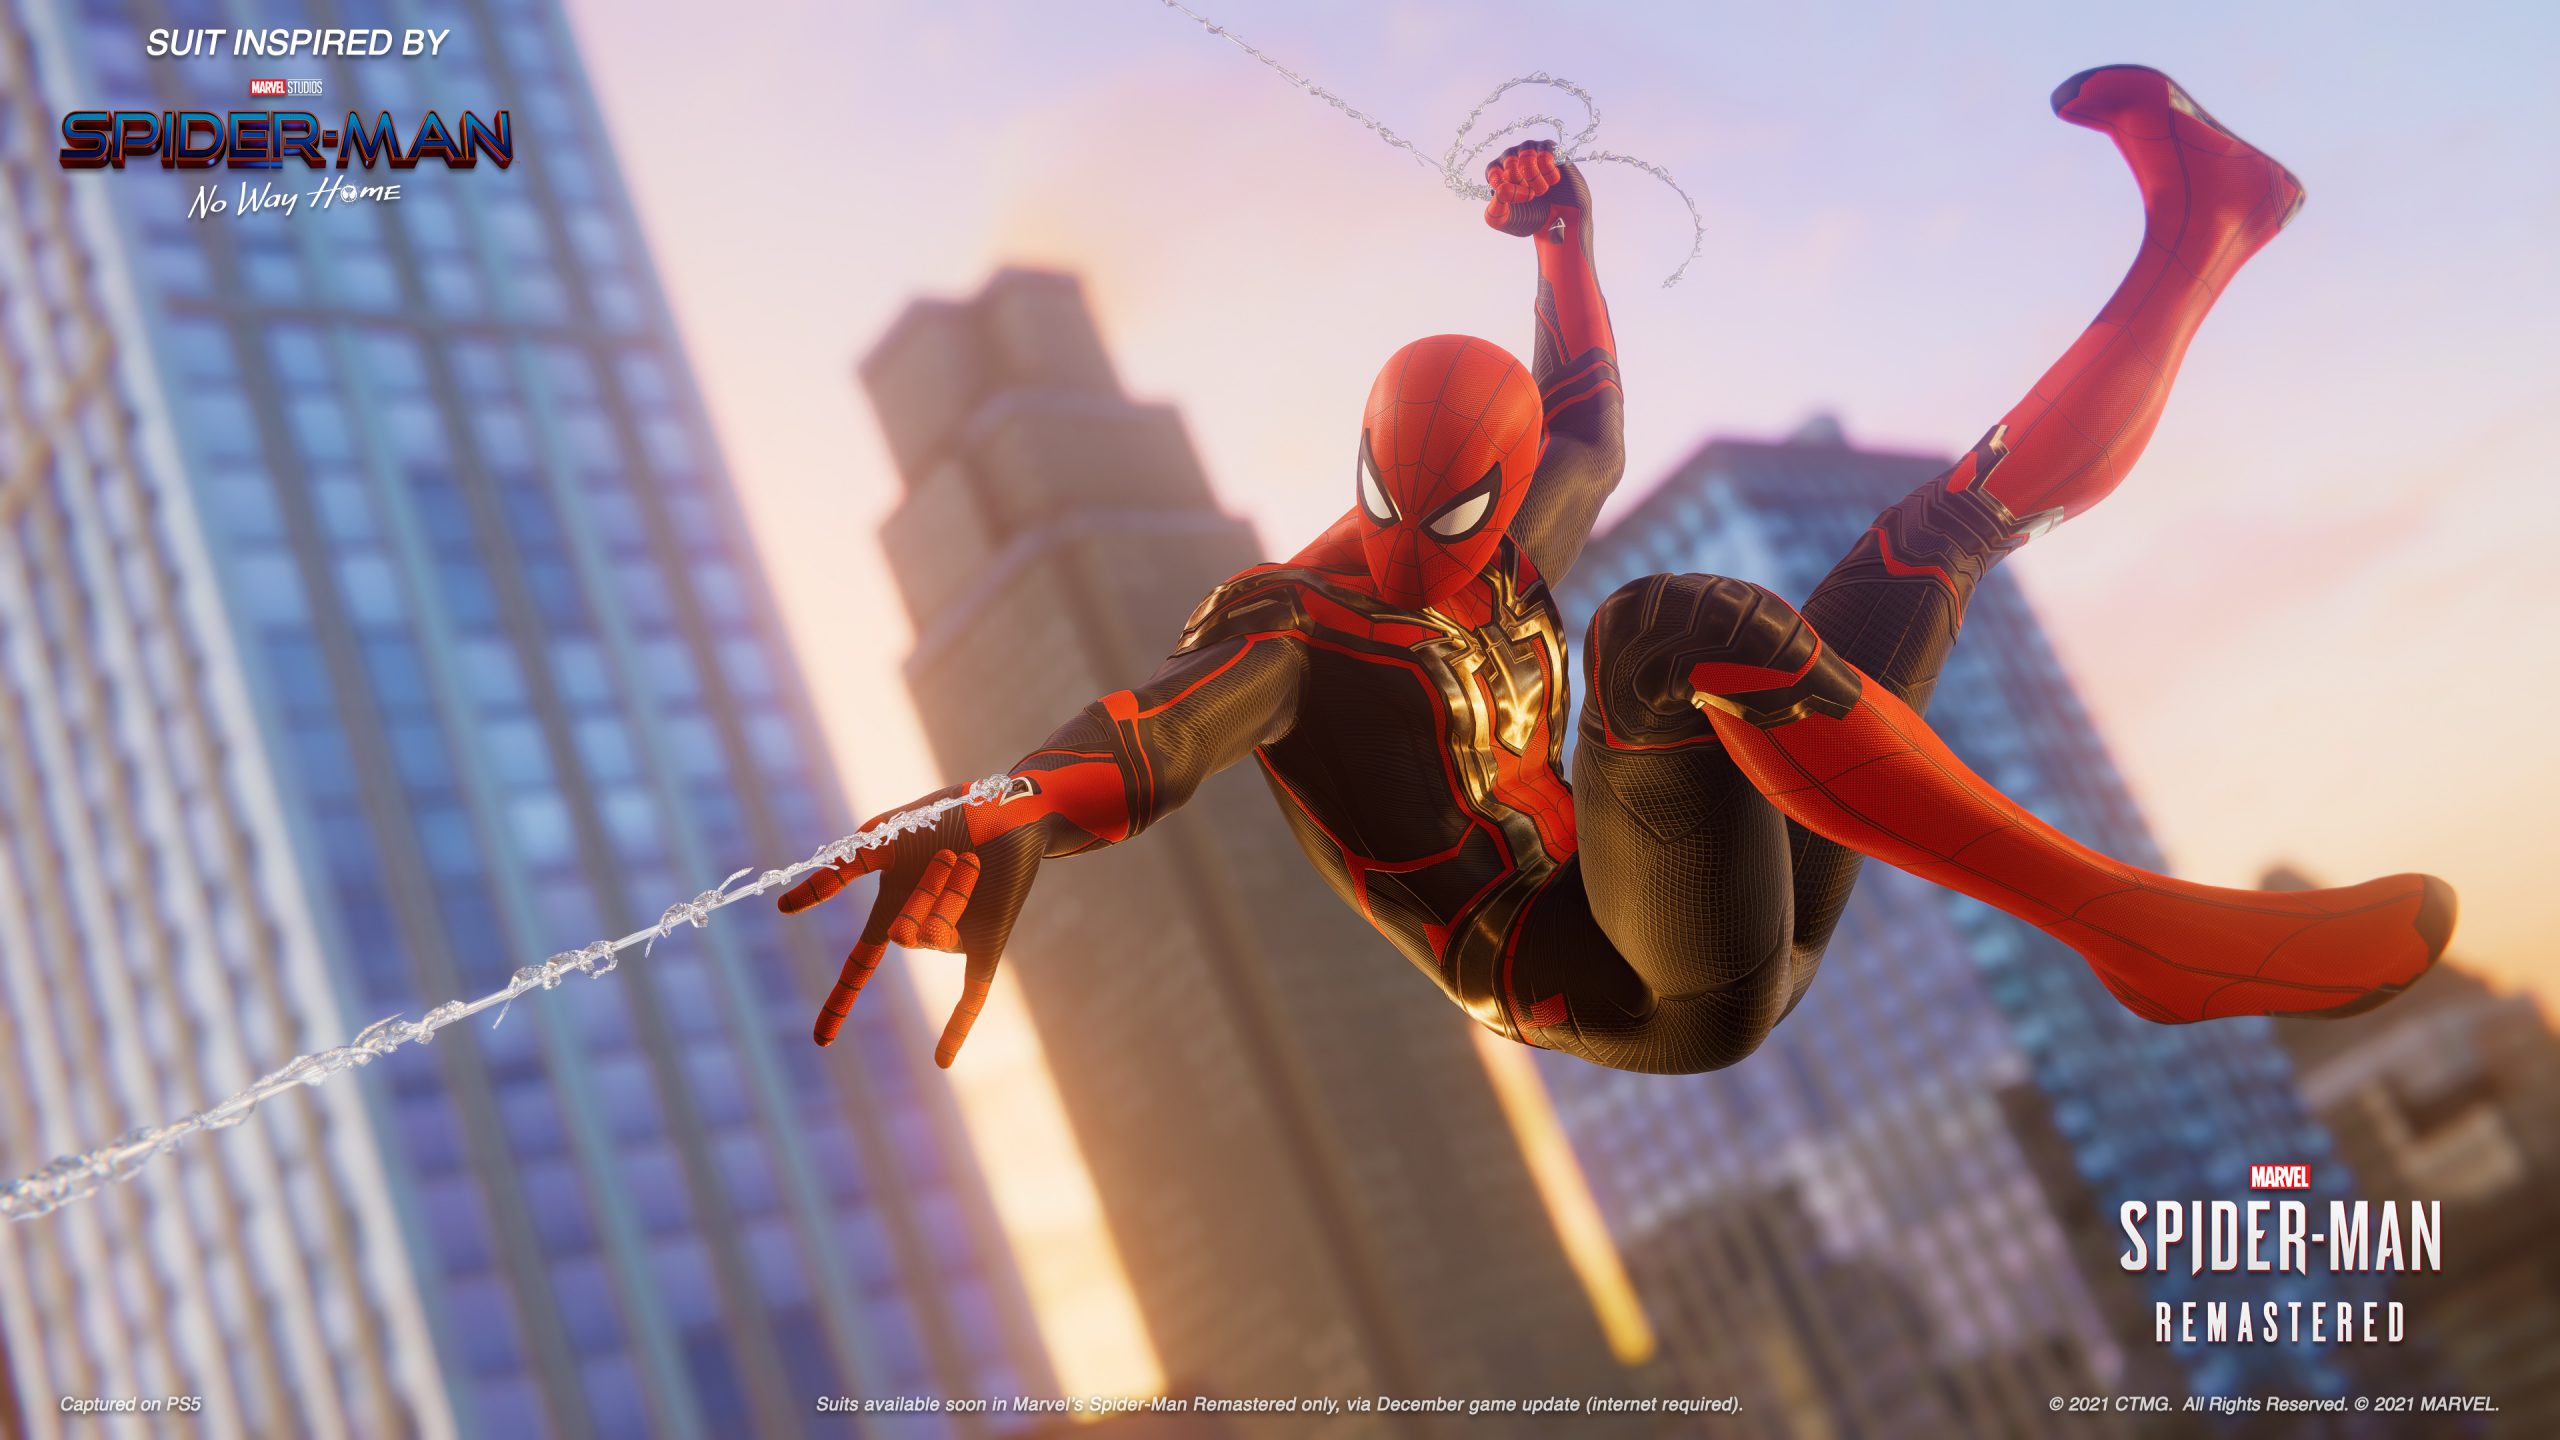 Marvel's Spider-Man trajes